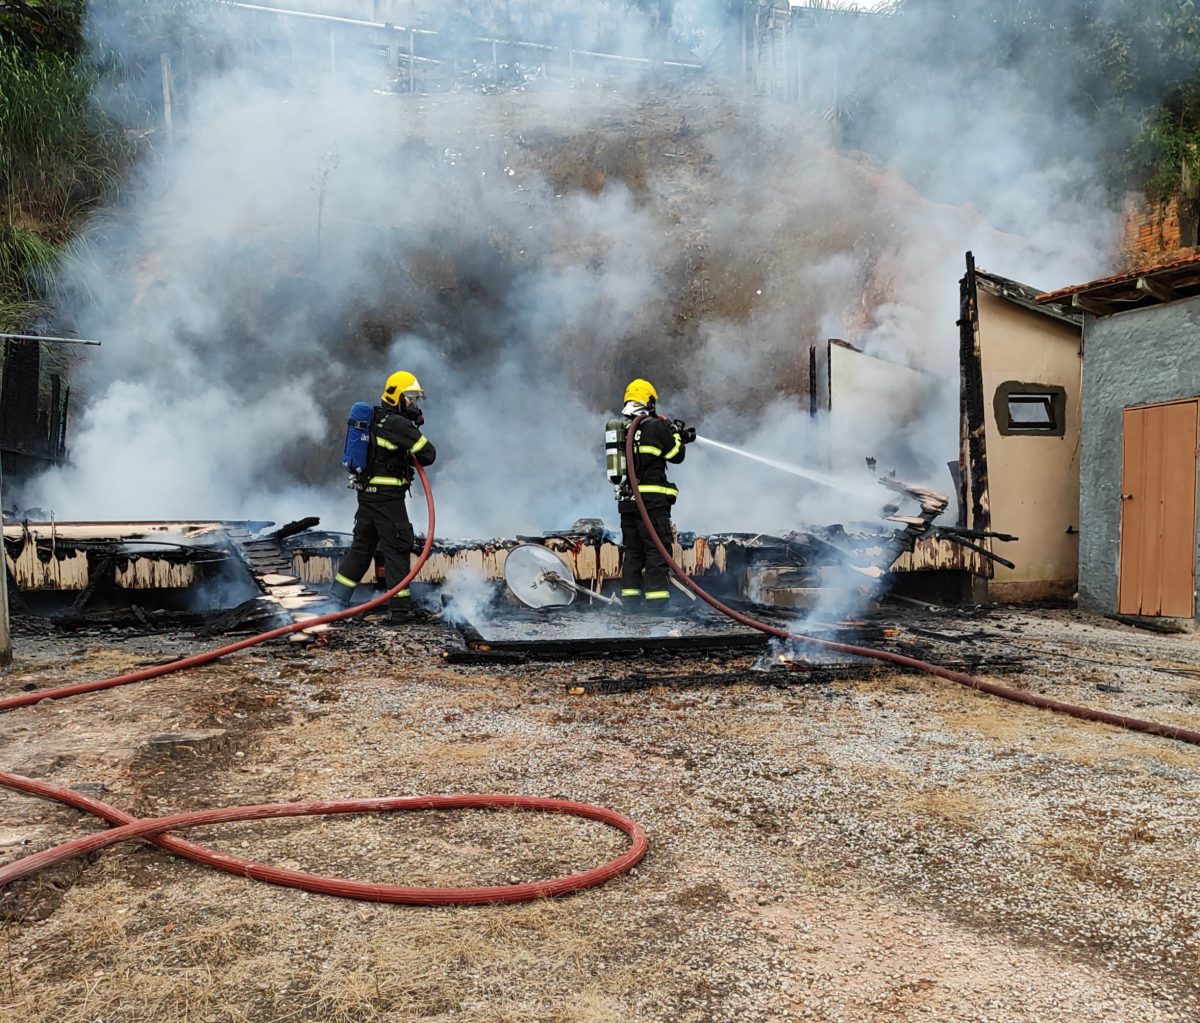 Residência de madeira fica destruída após pegar fogo em Gaspar

